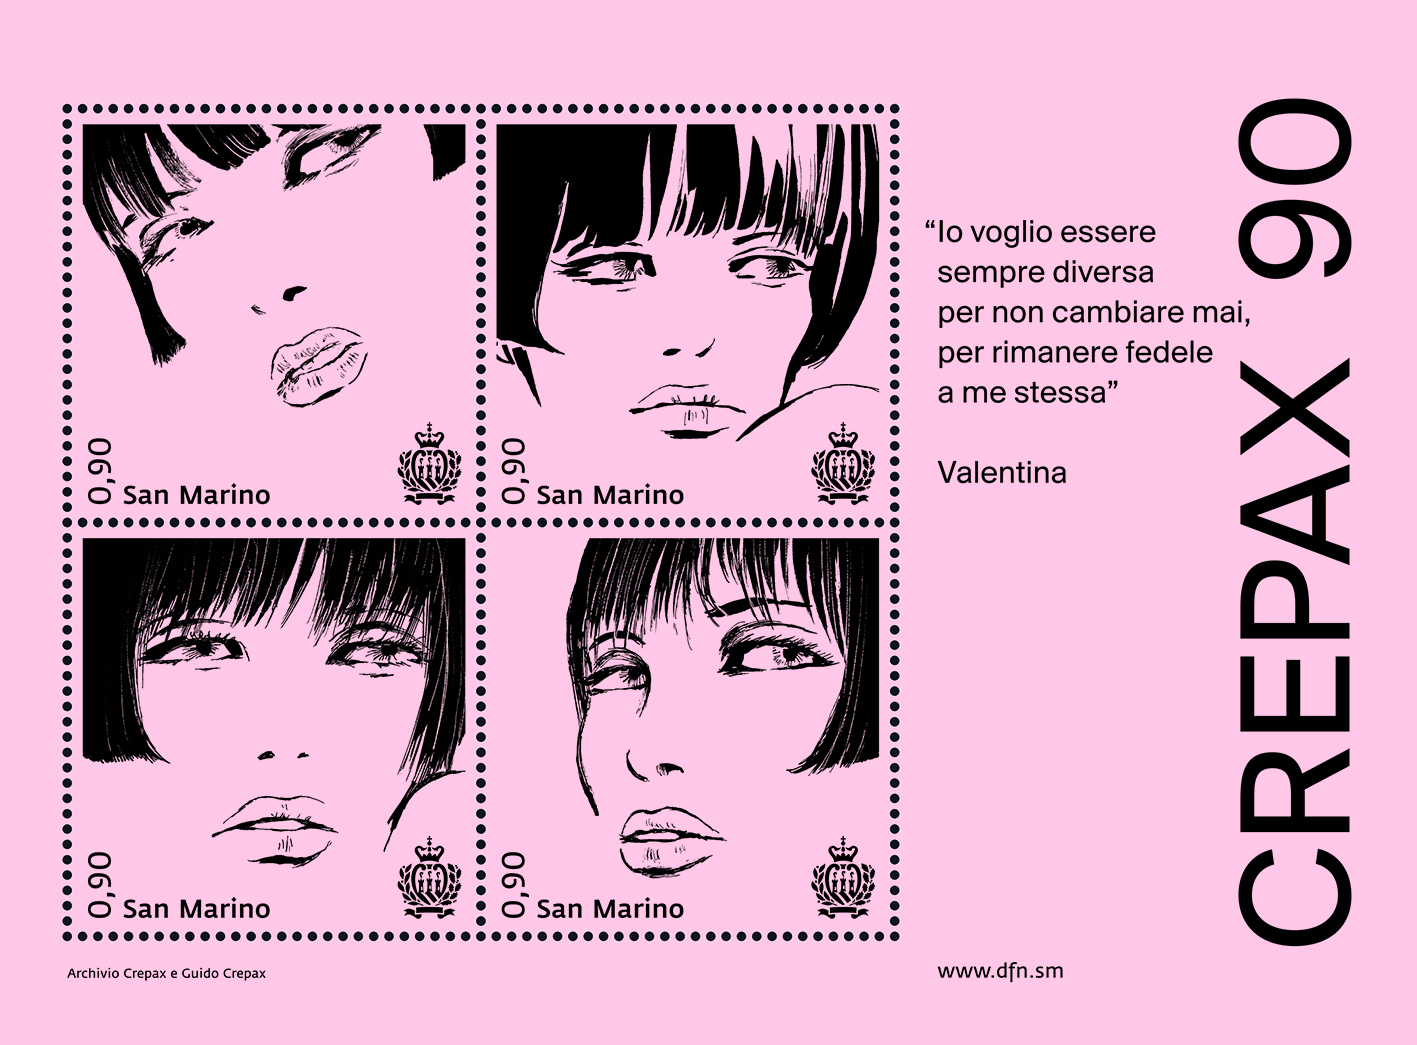 San Marino. Un foglietto con “Valentina” per celebrare il 90esimo anniversario della nascita di Guido Crepax